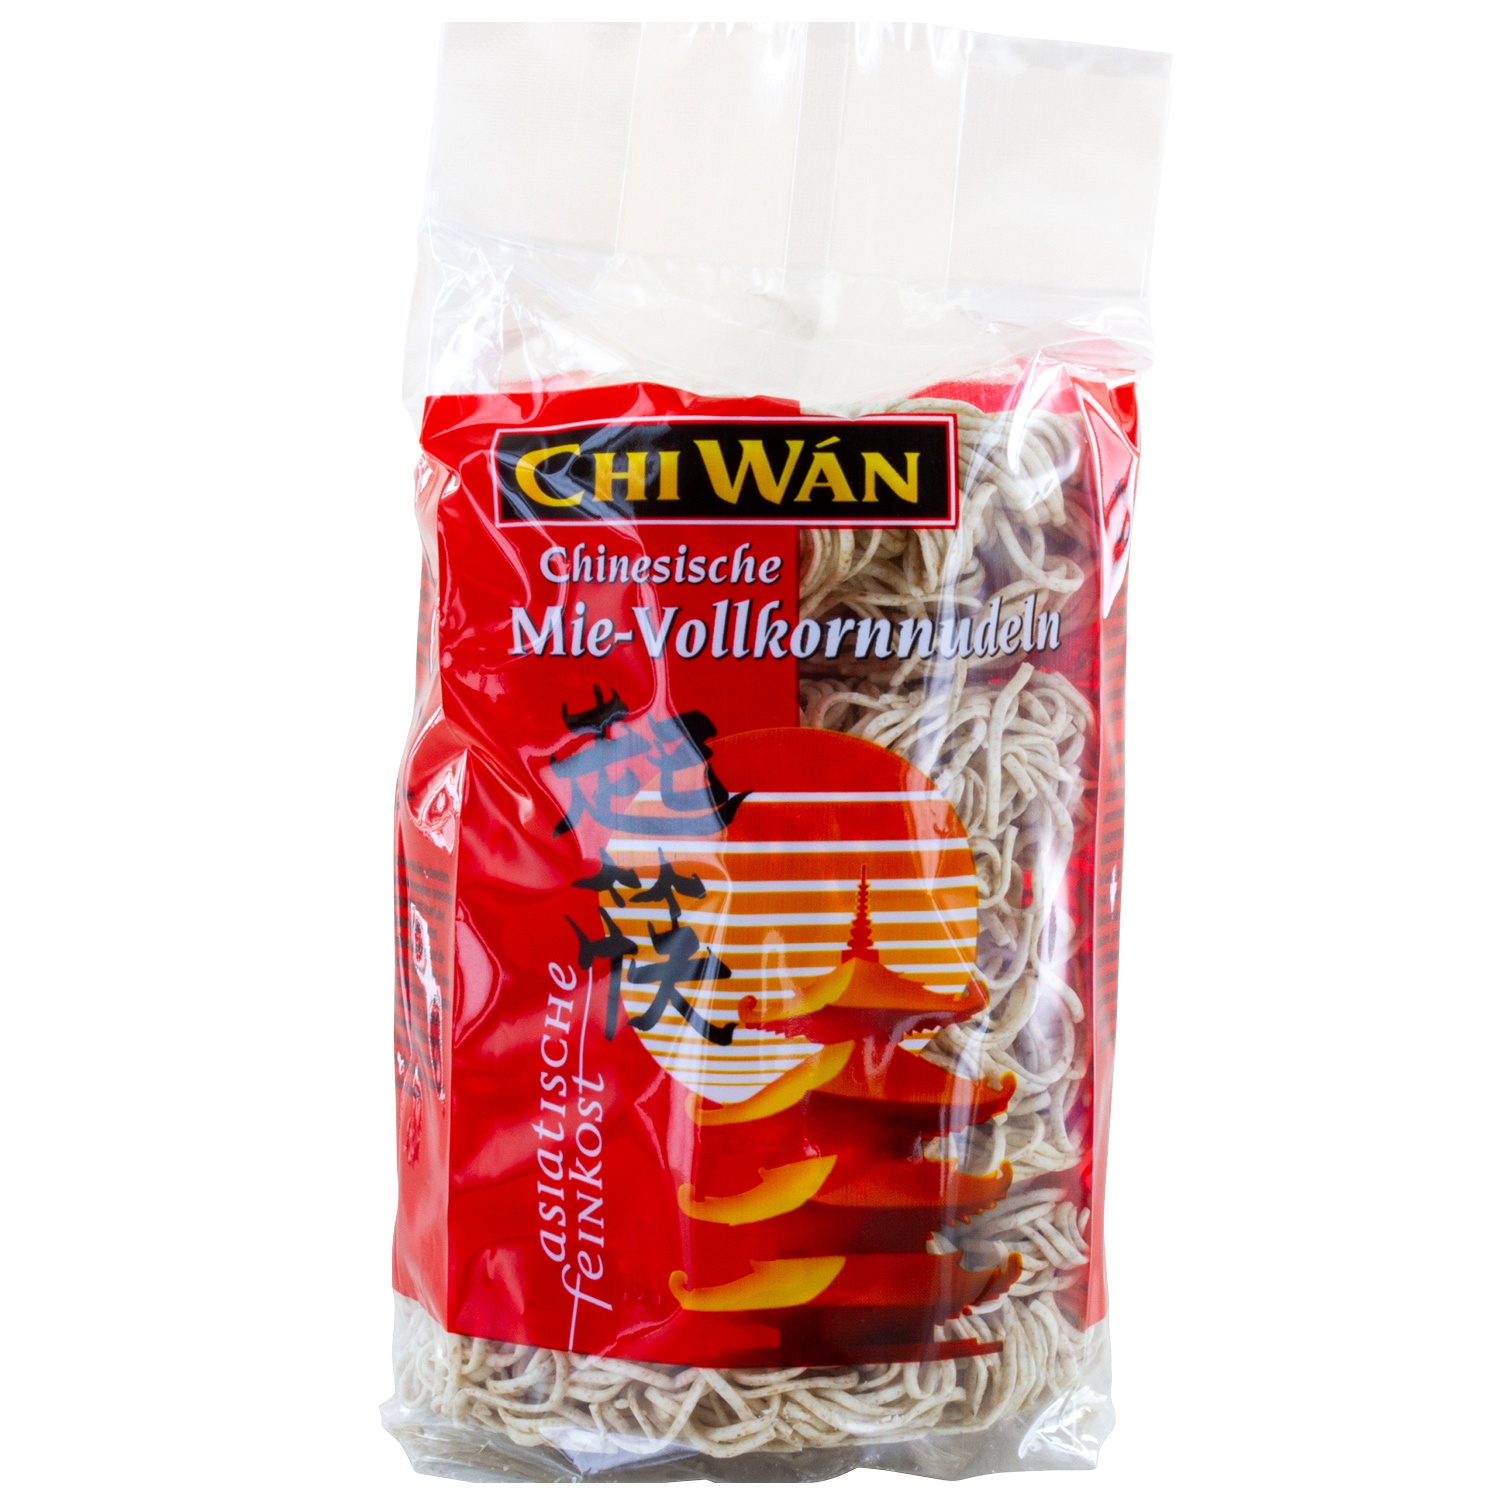 CHI WAN Chinesische Mie-Nudeln/-Vollkornnudeln 250 g